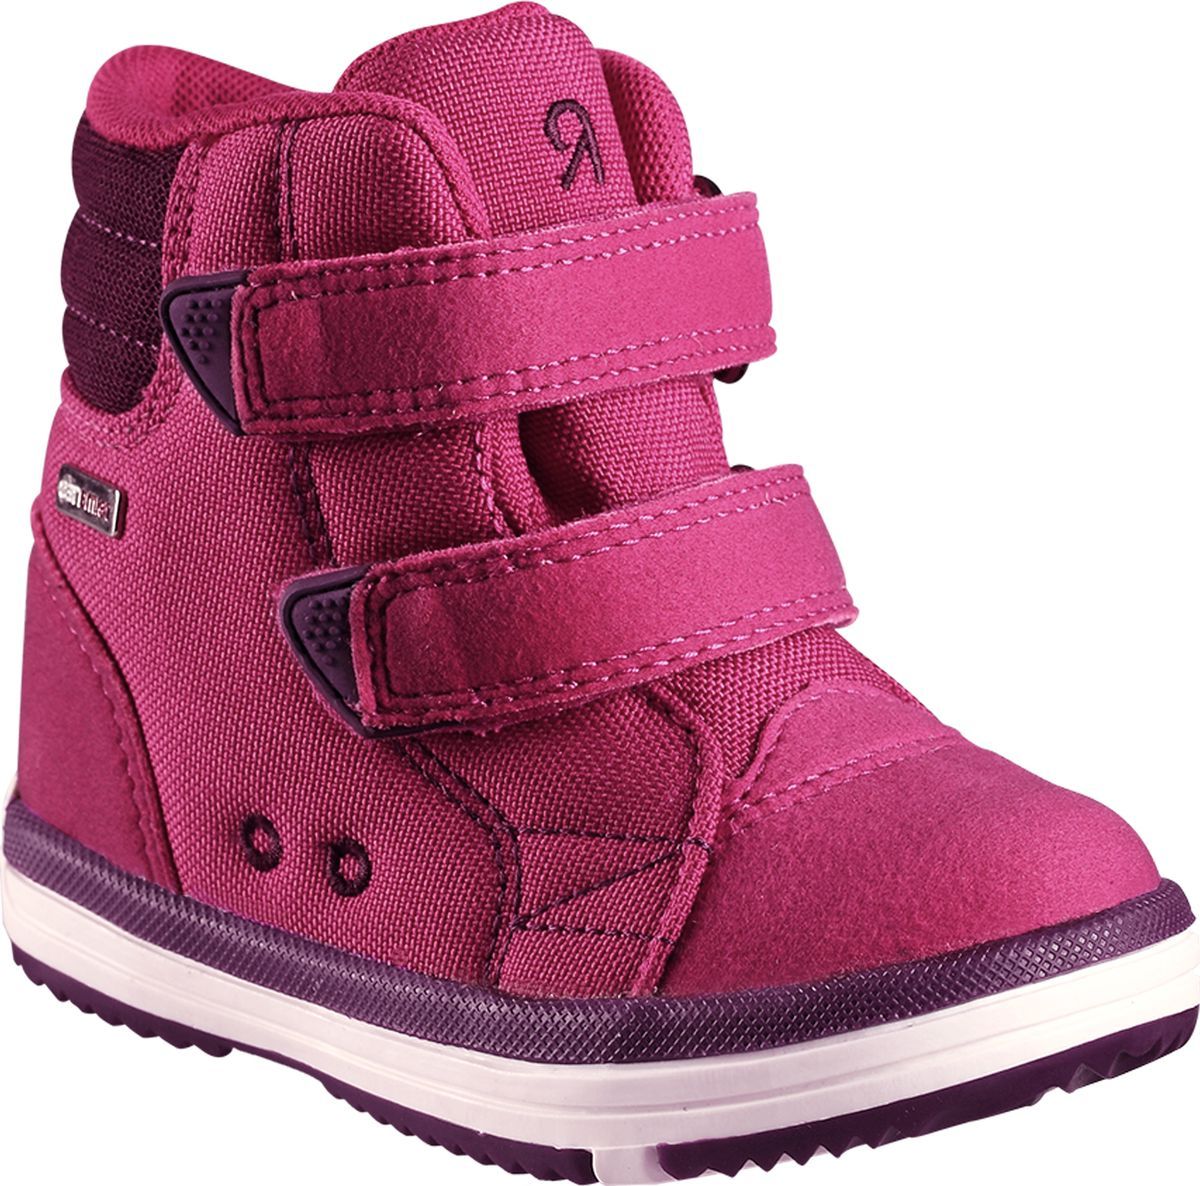 Ботинки детские Reima Patter, цвет: розовый. 5693443600. Размер 25